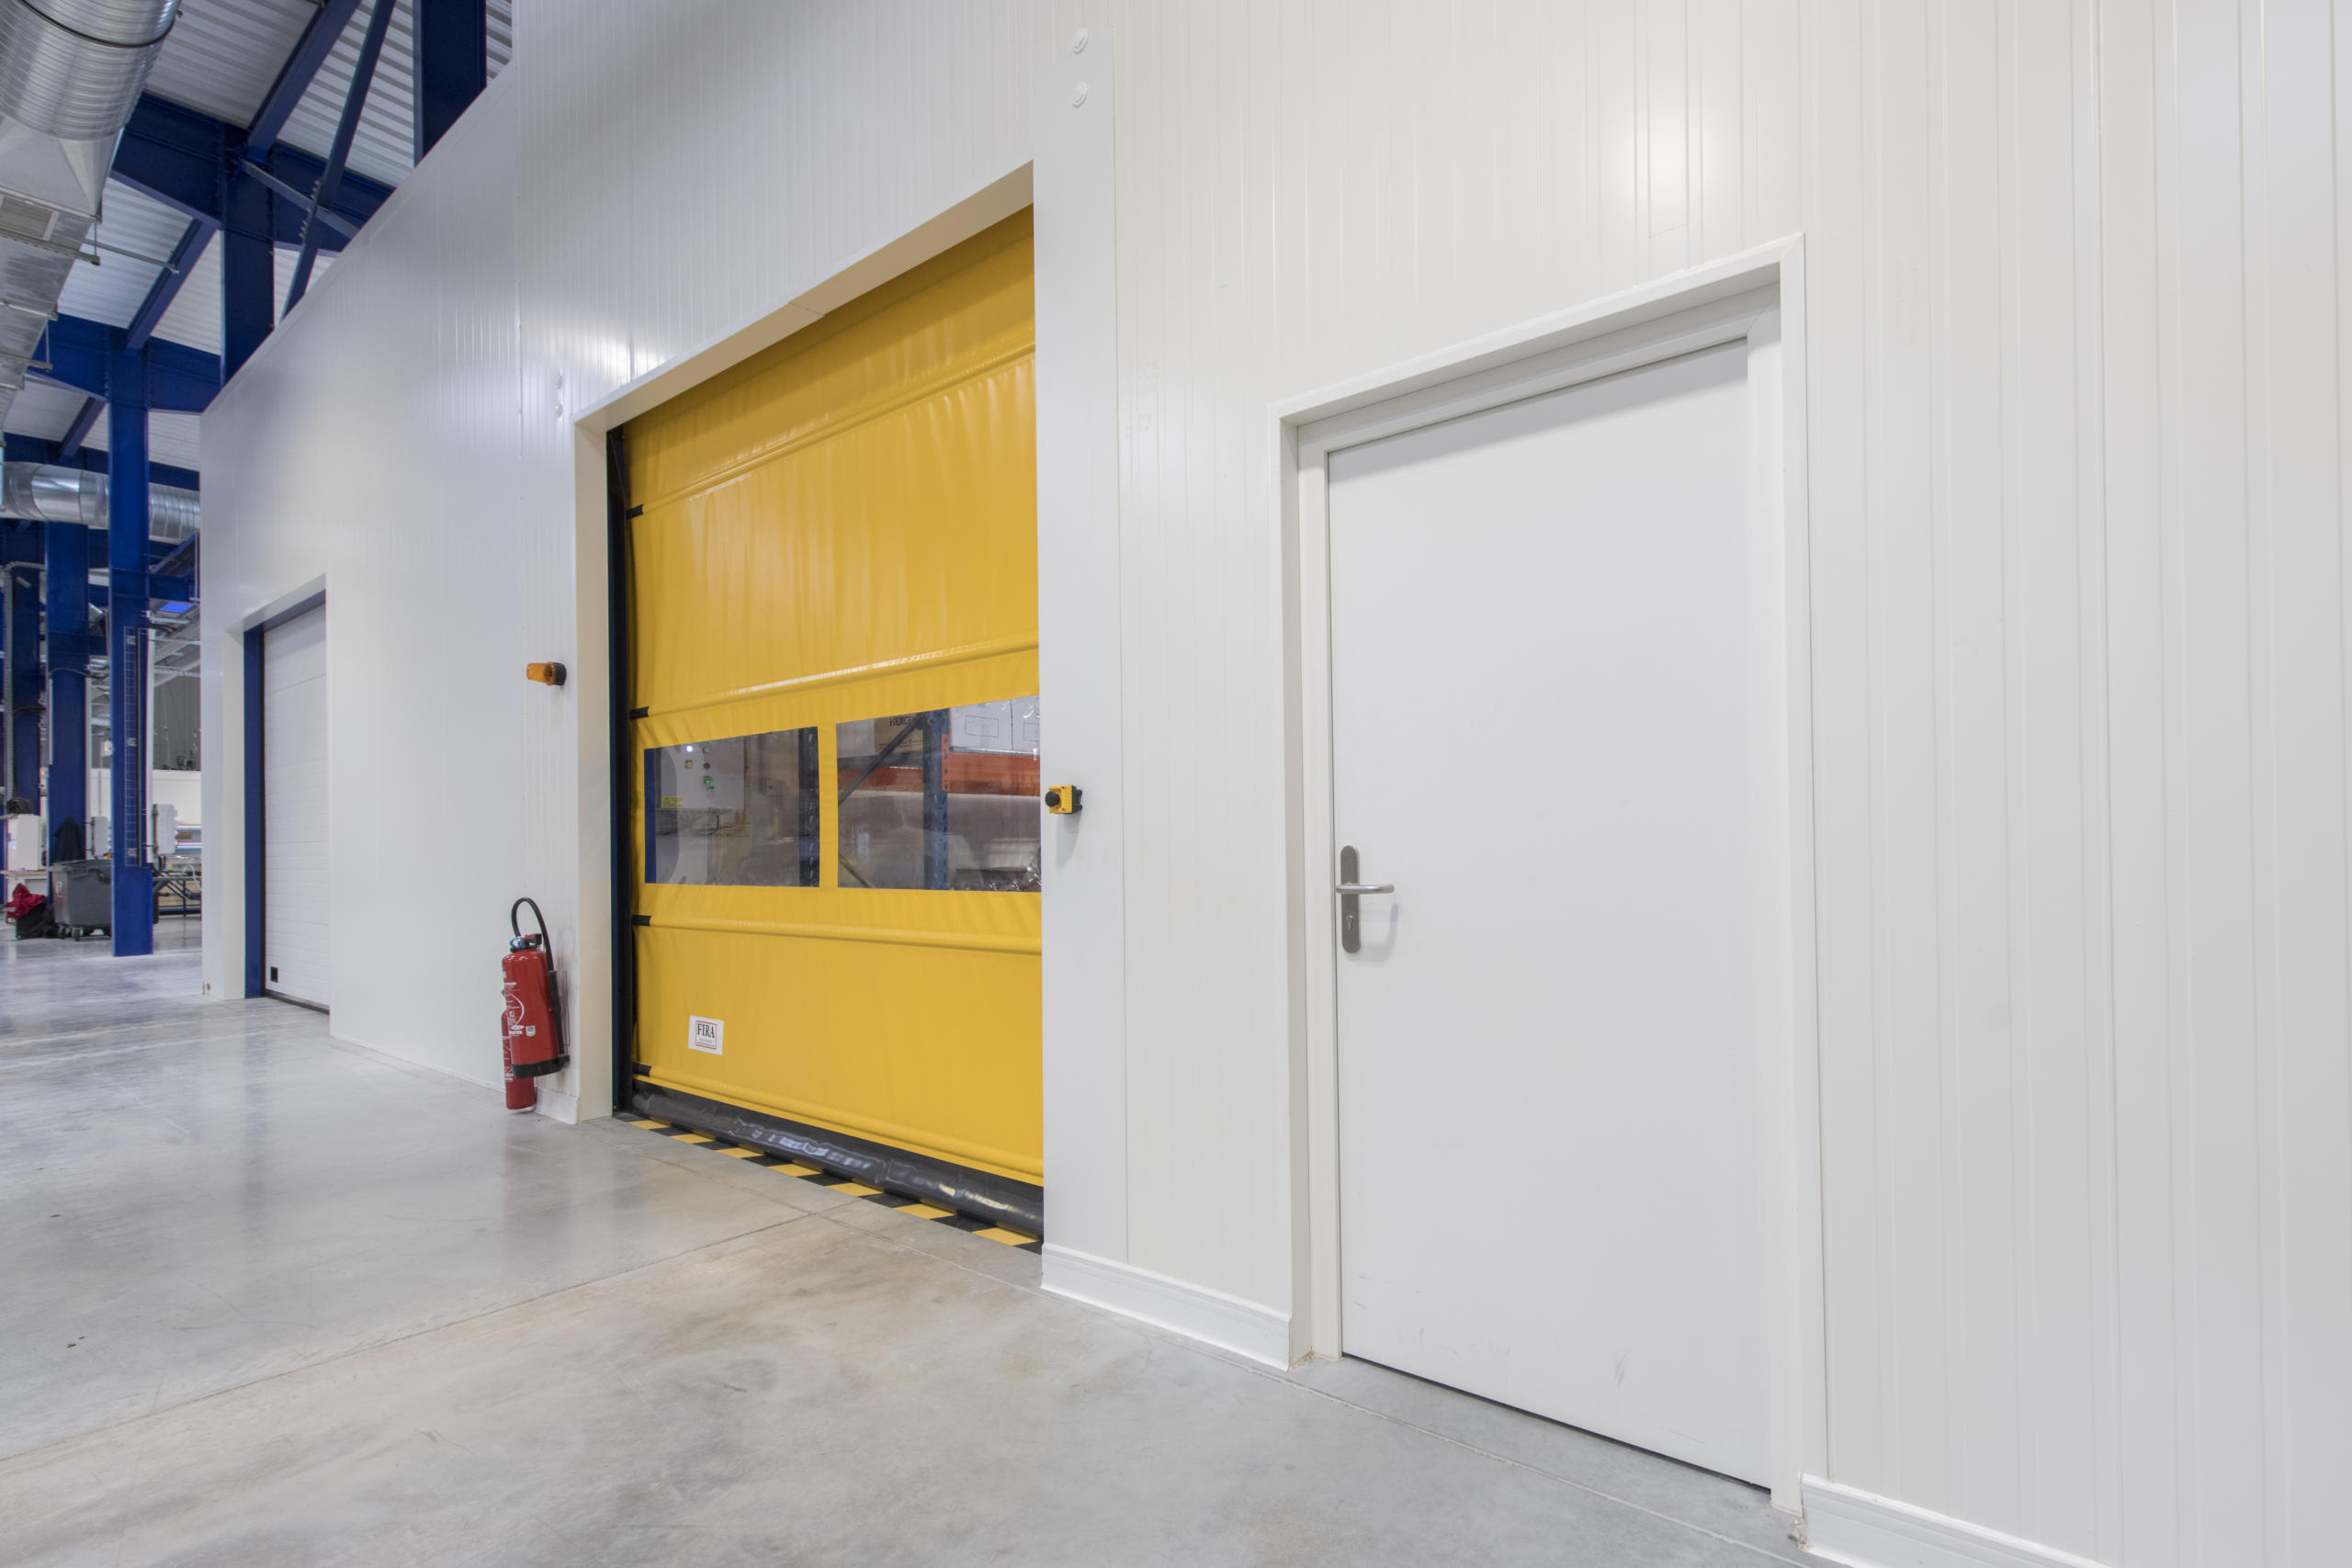 The Dagard industrial door